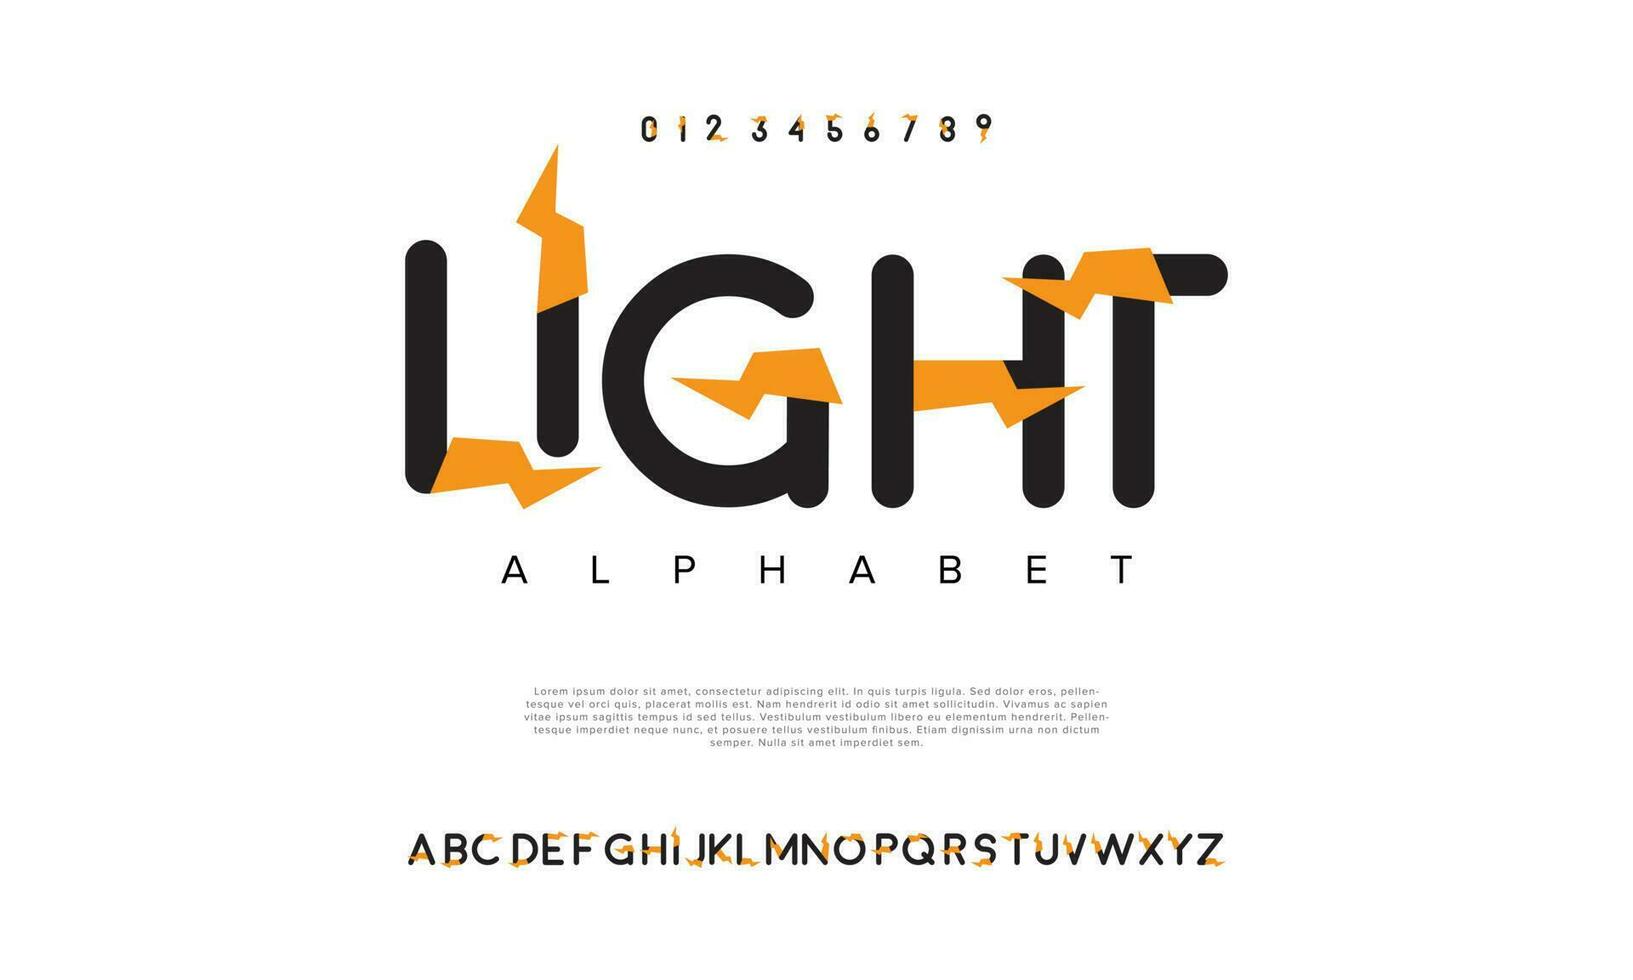 Licht abstrakt Digital Technologie Logo Schriftart Alphabet. minimal modern städtisch Schriftarten zum Logo, Marke usw. Typografie Schrift Großbuchstaben Kleinbuchstaben und Nummer. Vektor Illustration